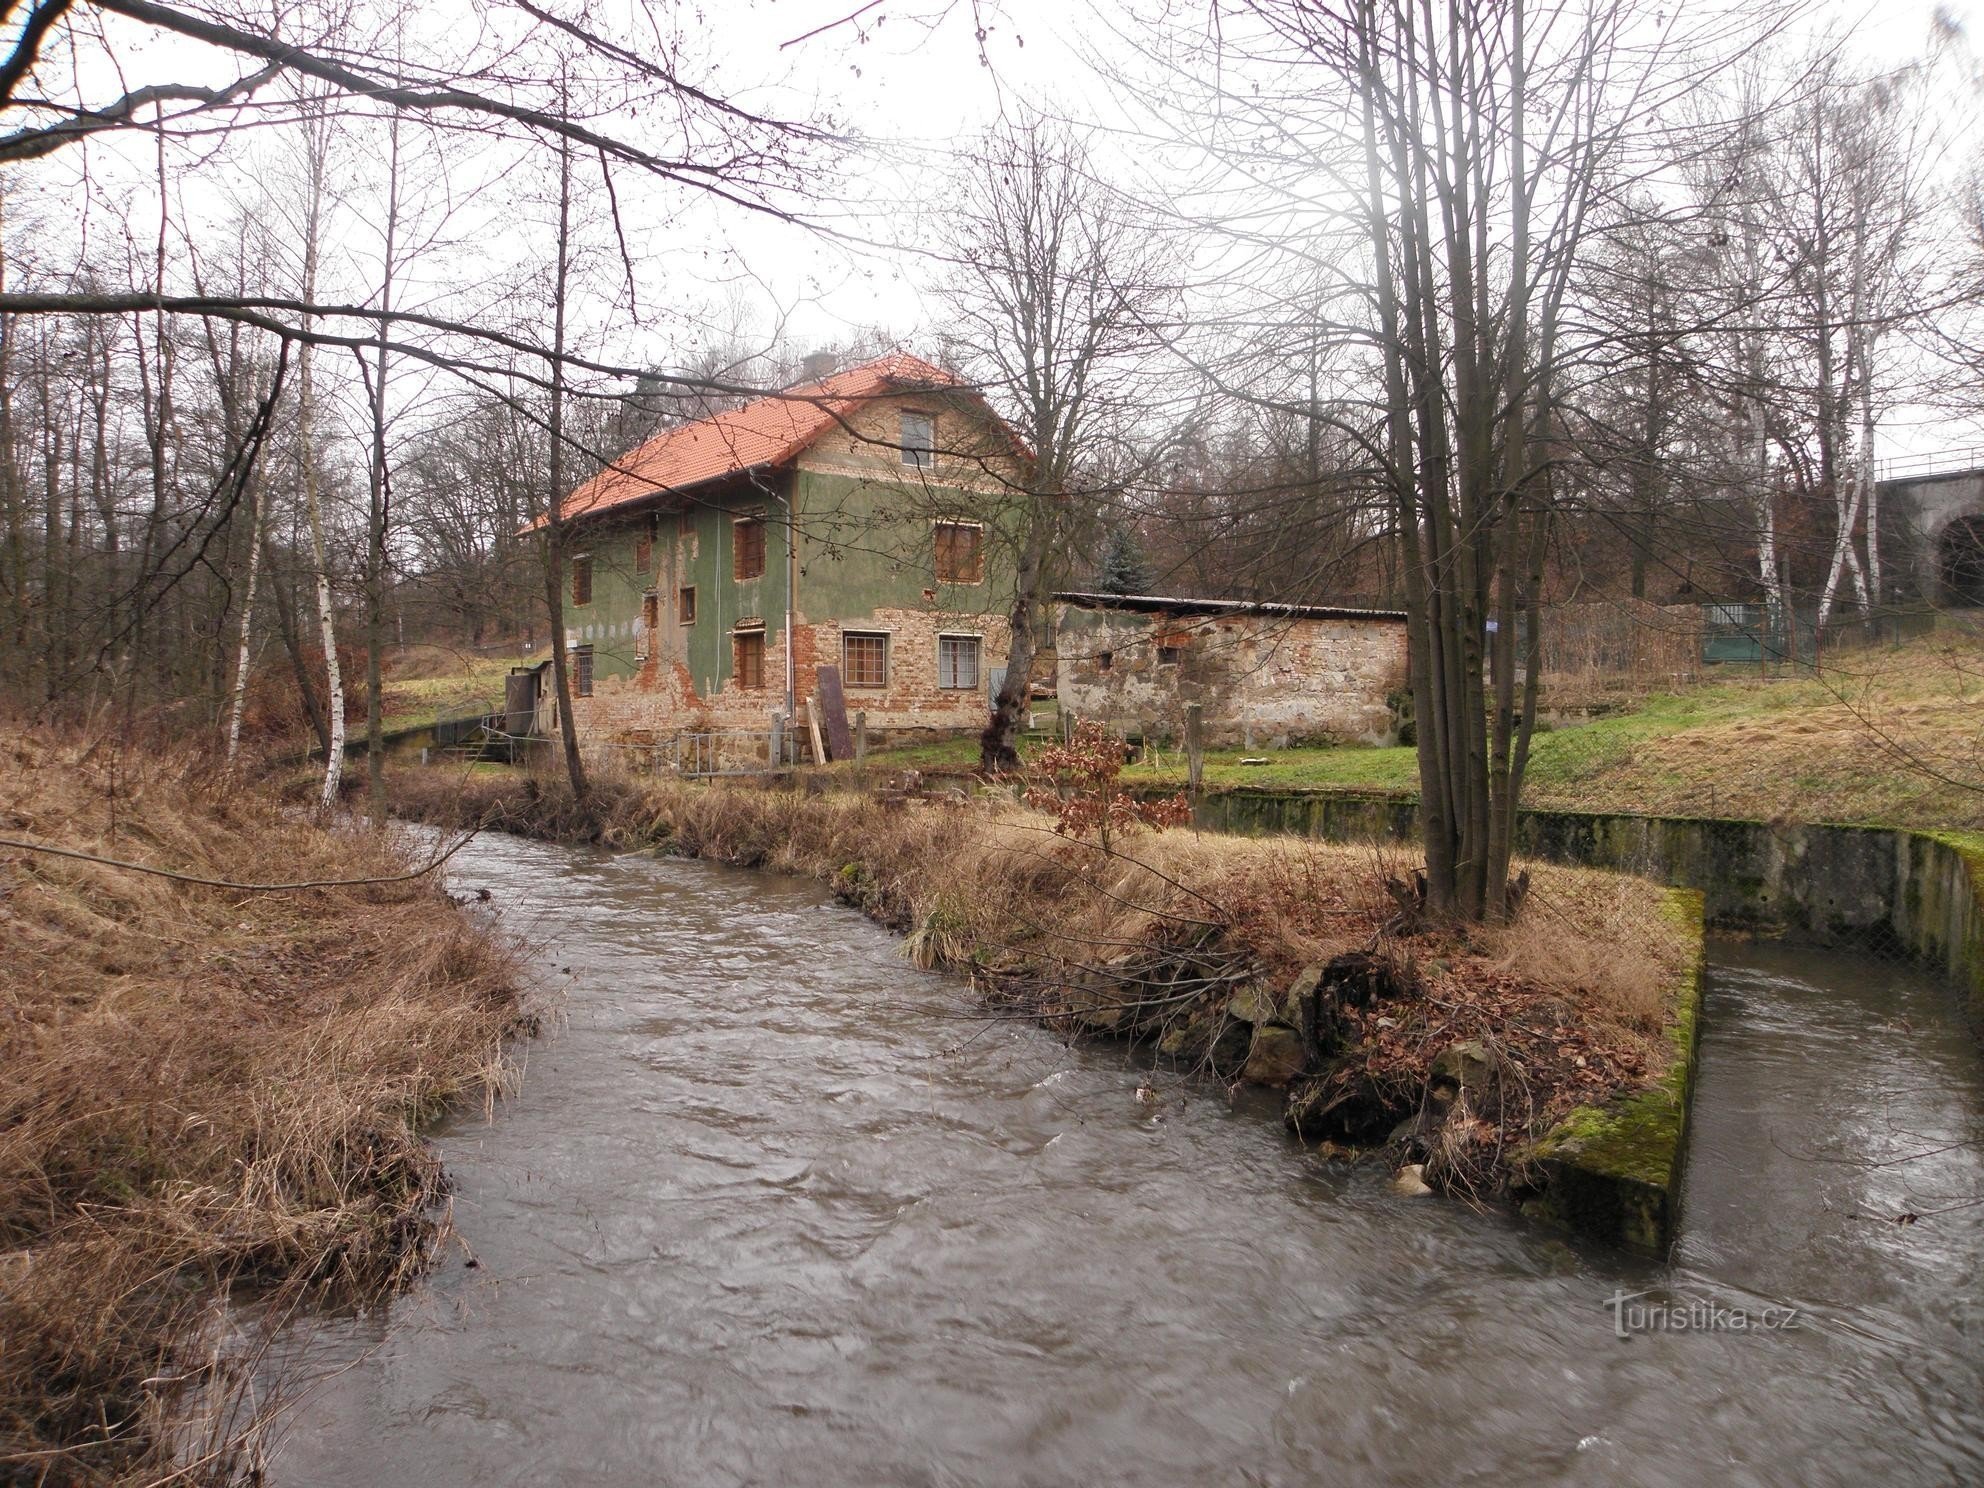 Water mill near Jenišov - 12.1.2012